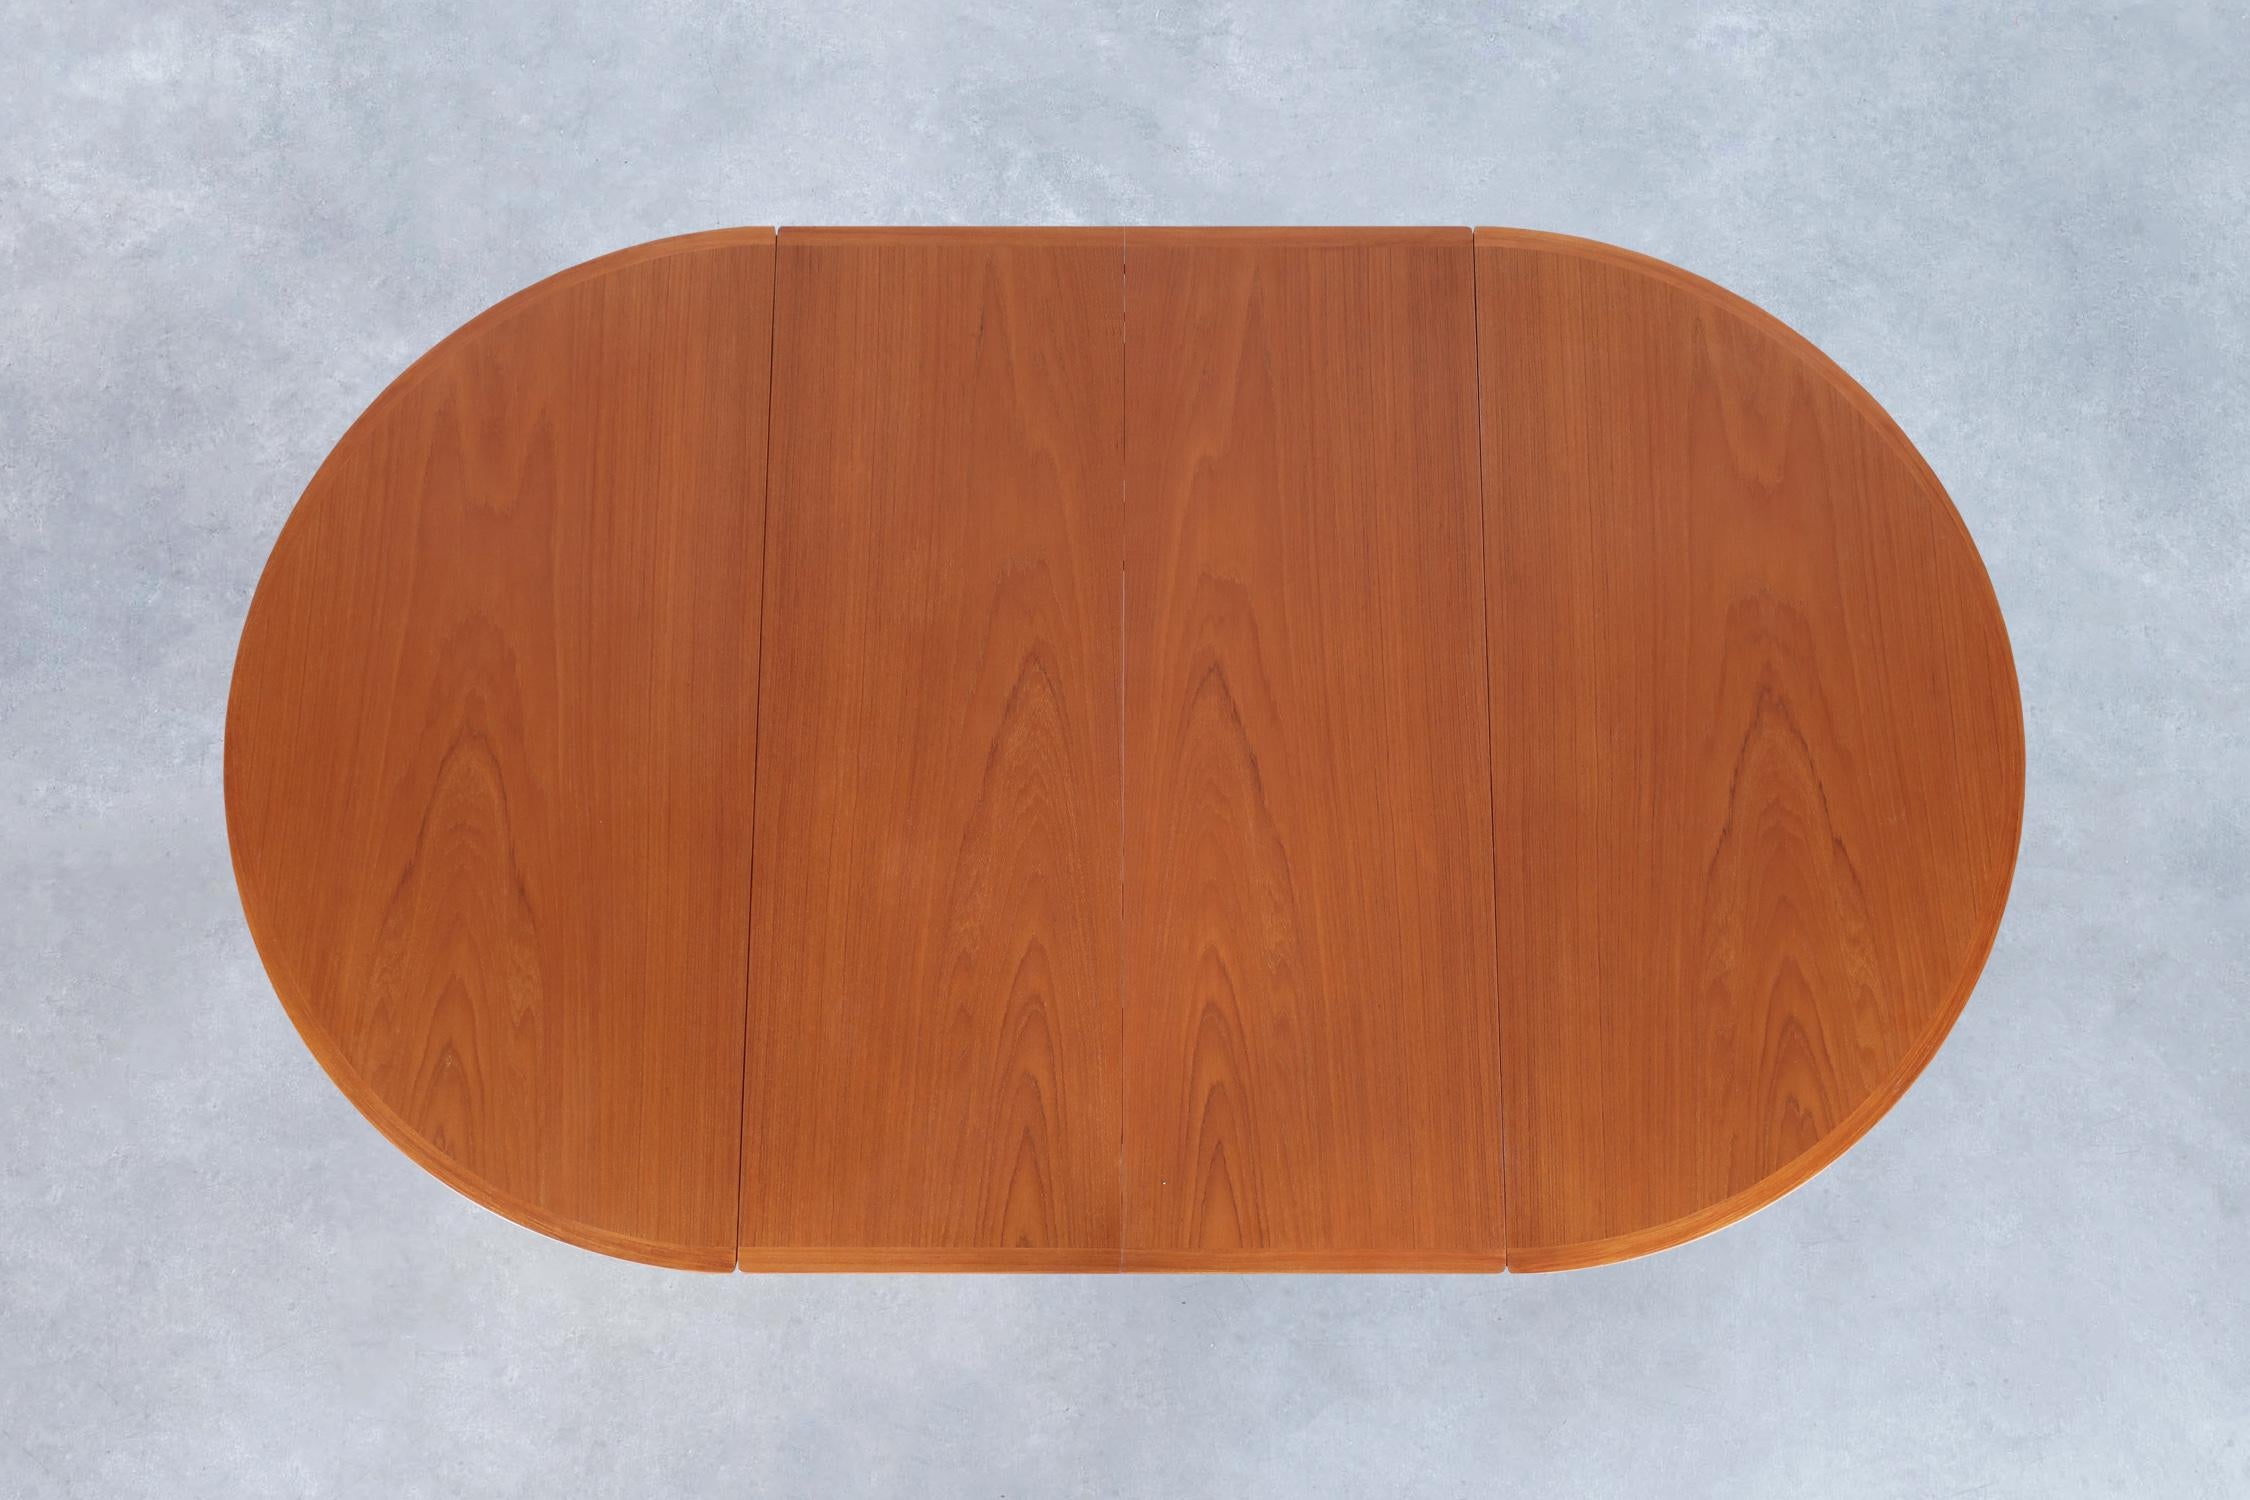 Danish Modern Teak Drop-Leaf Expanding Dining Table by Arne Vodder for Sibast For Sale 4